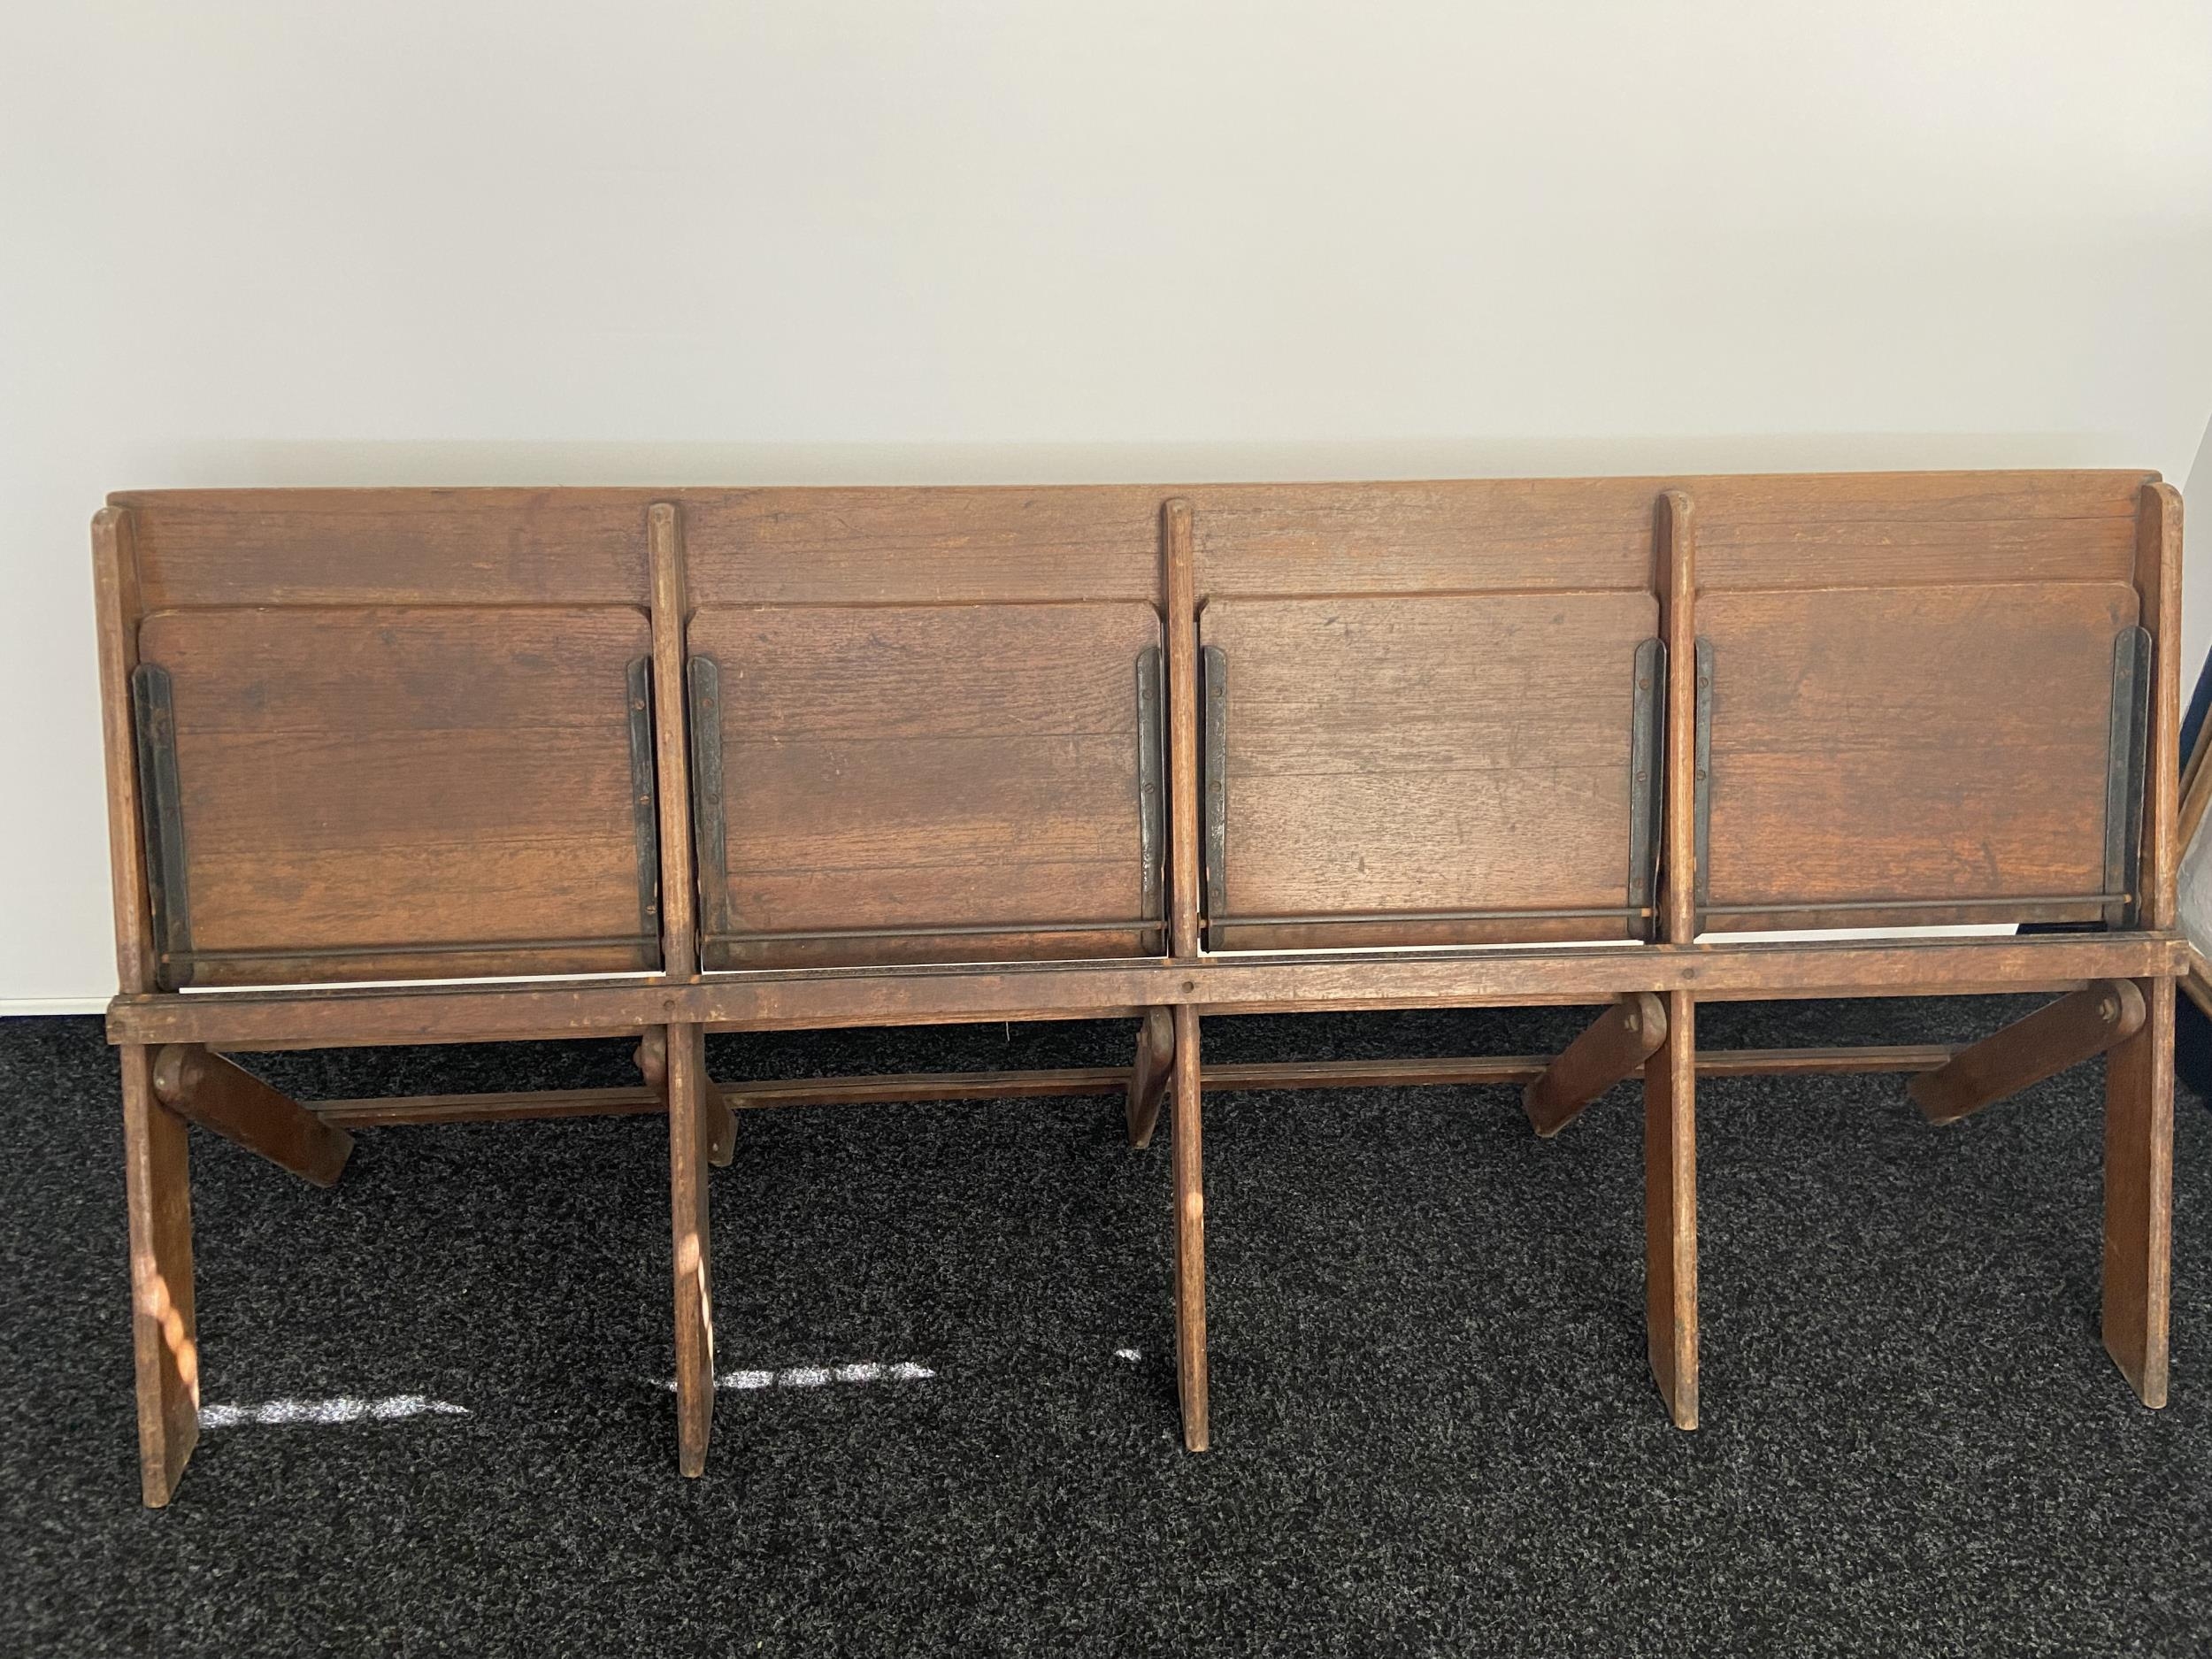 James D. Bennet Ltd. Glasgow, A four folding chair bench. [76x186x46cm] - Image 5 of 7